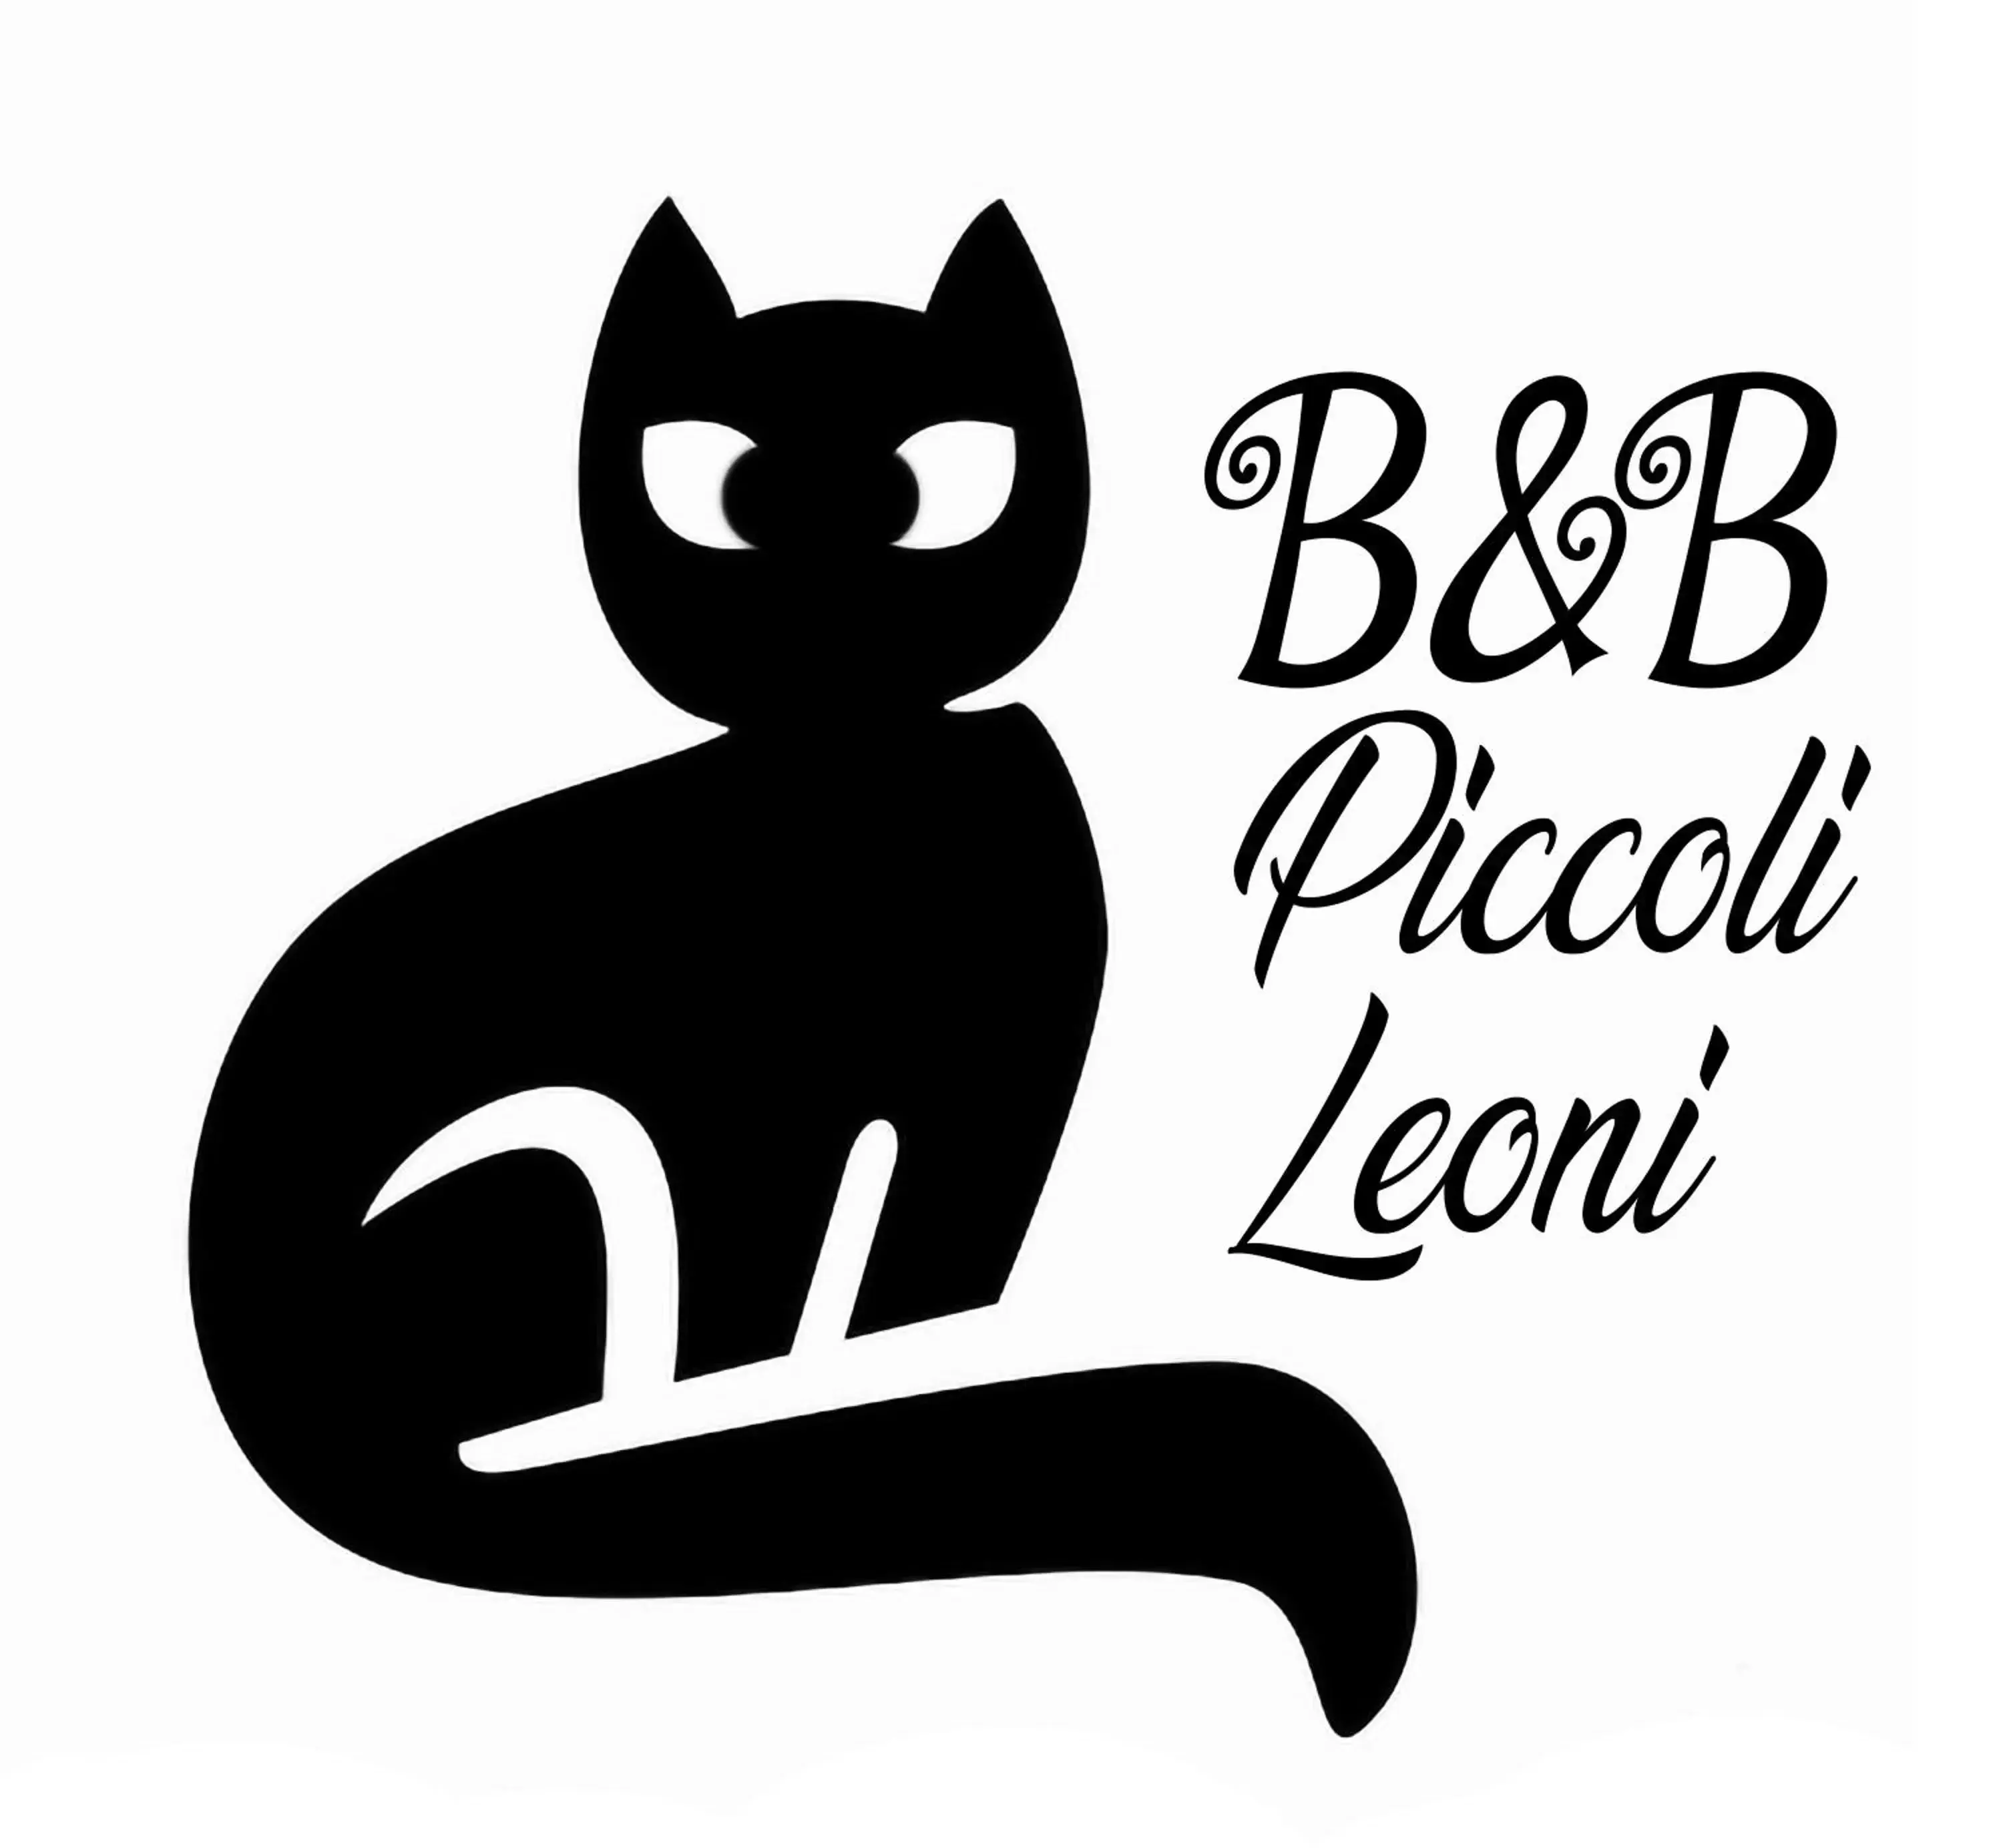 Property logo or sign in B&B Piccoli Leoni